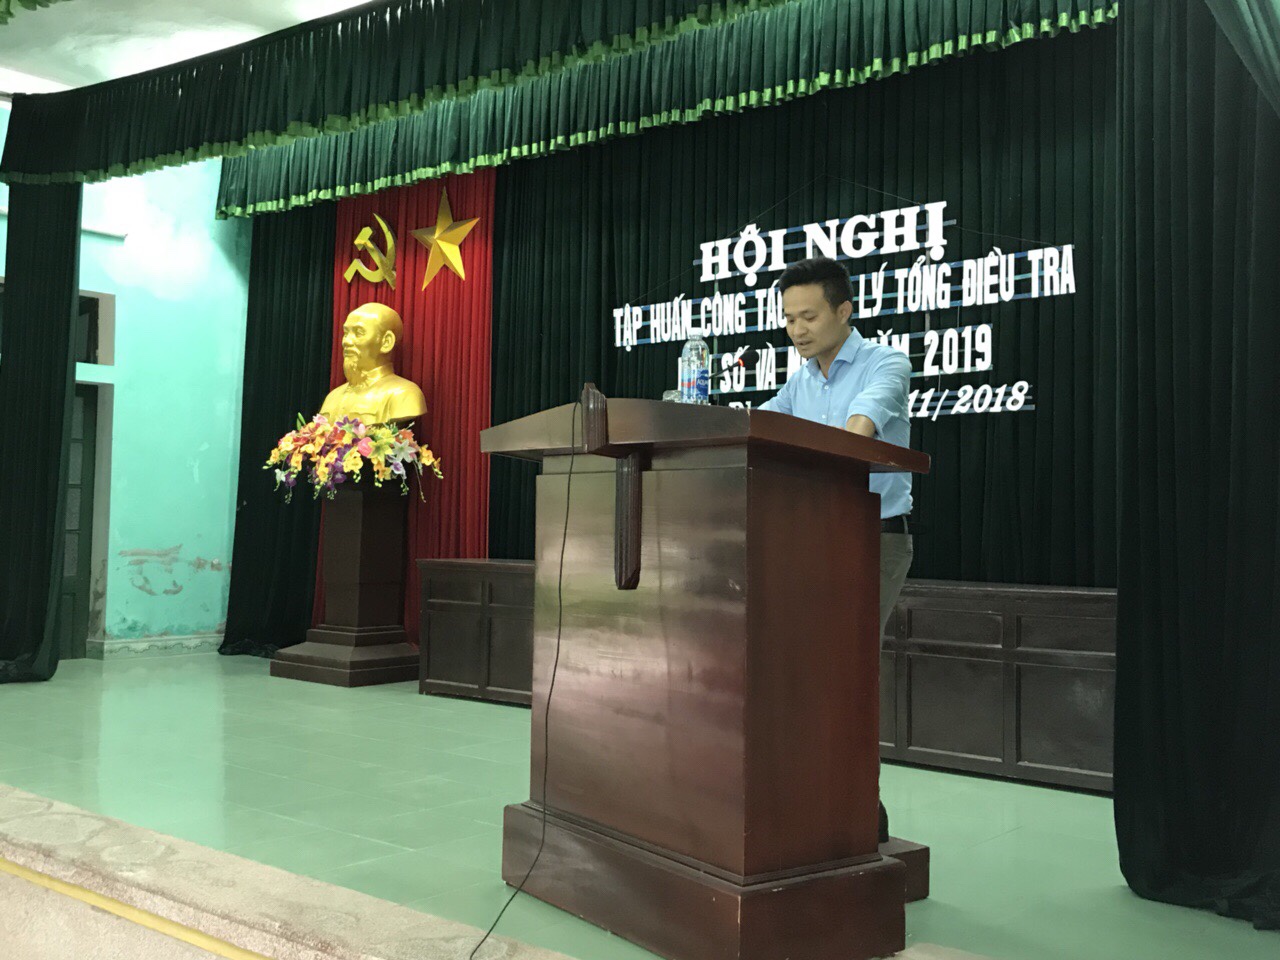 Huyện Quỳnh Phụ tổ chức lớp tập huấn Công tác quản lý Tổng điều tra Dân số và nhà ở năm 2019